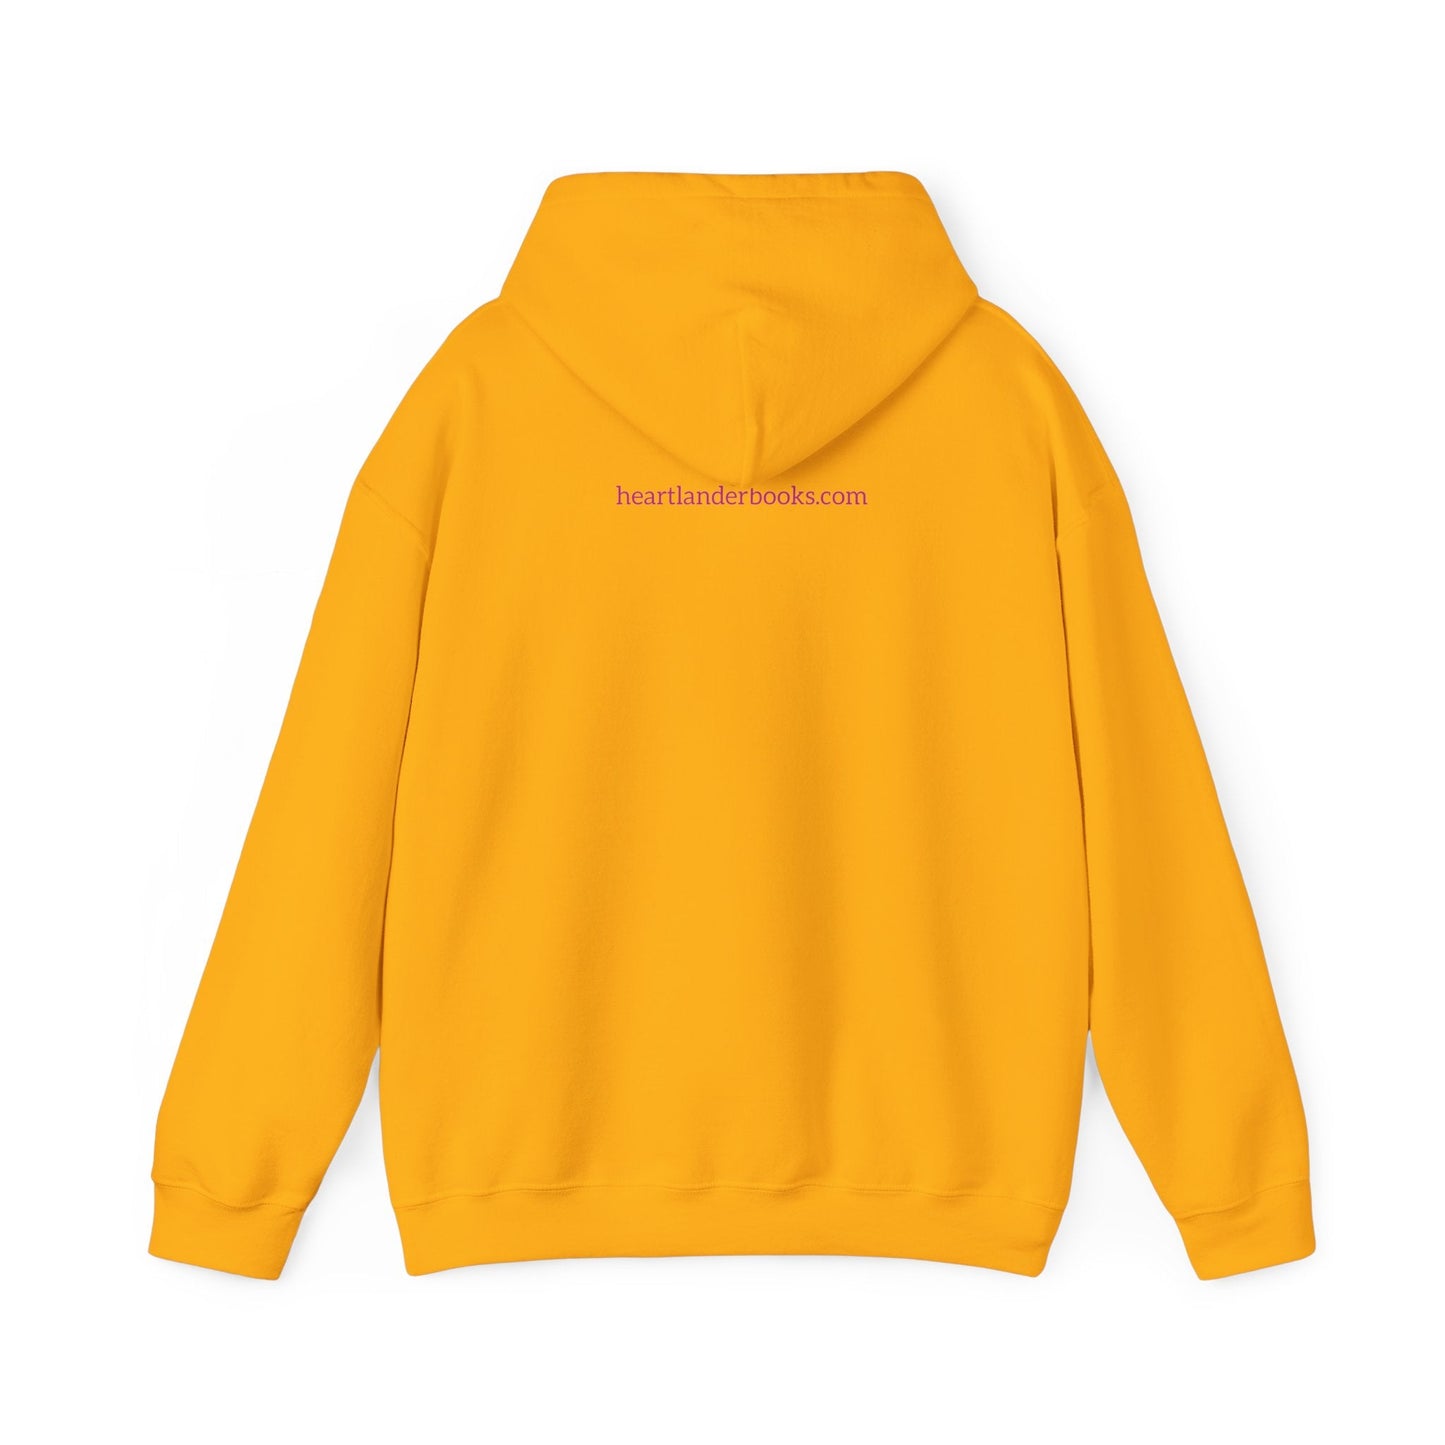 Hoodie - Flyover Country Unisex Heavy Blend™ Hooded Sweatshirt